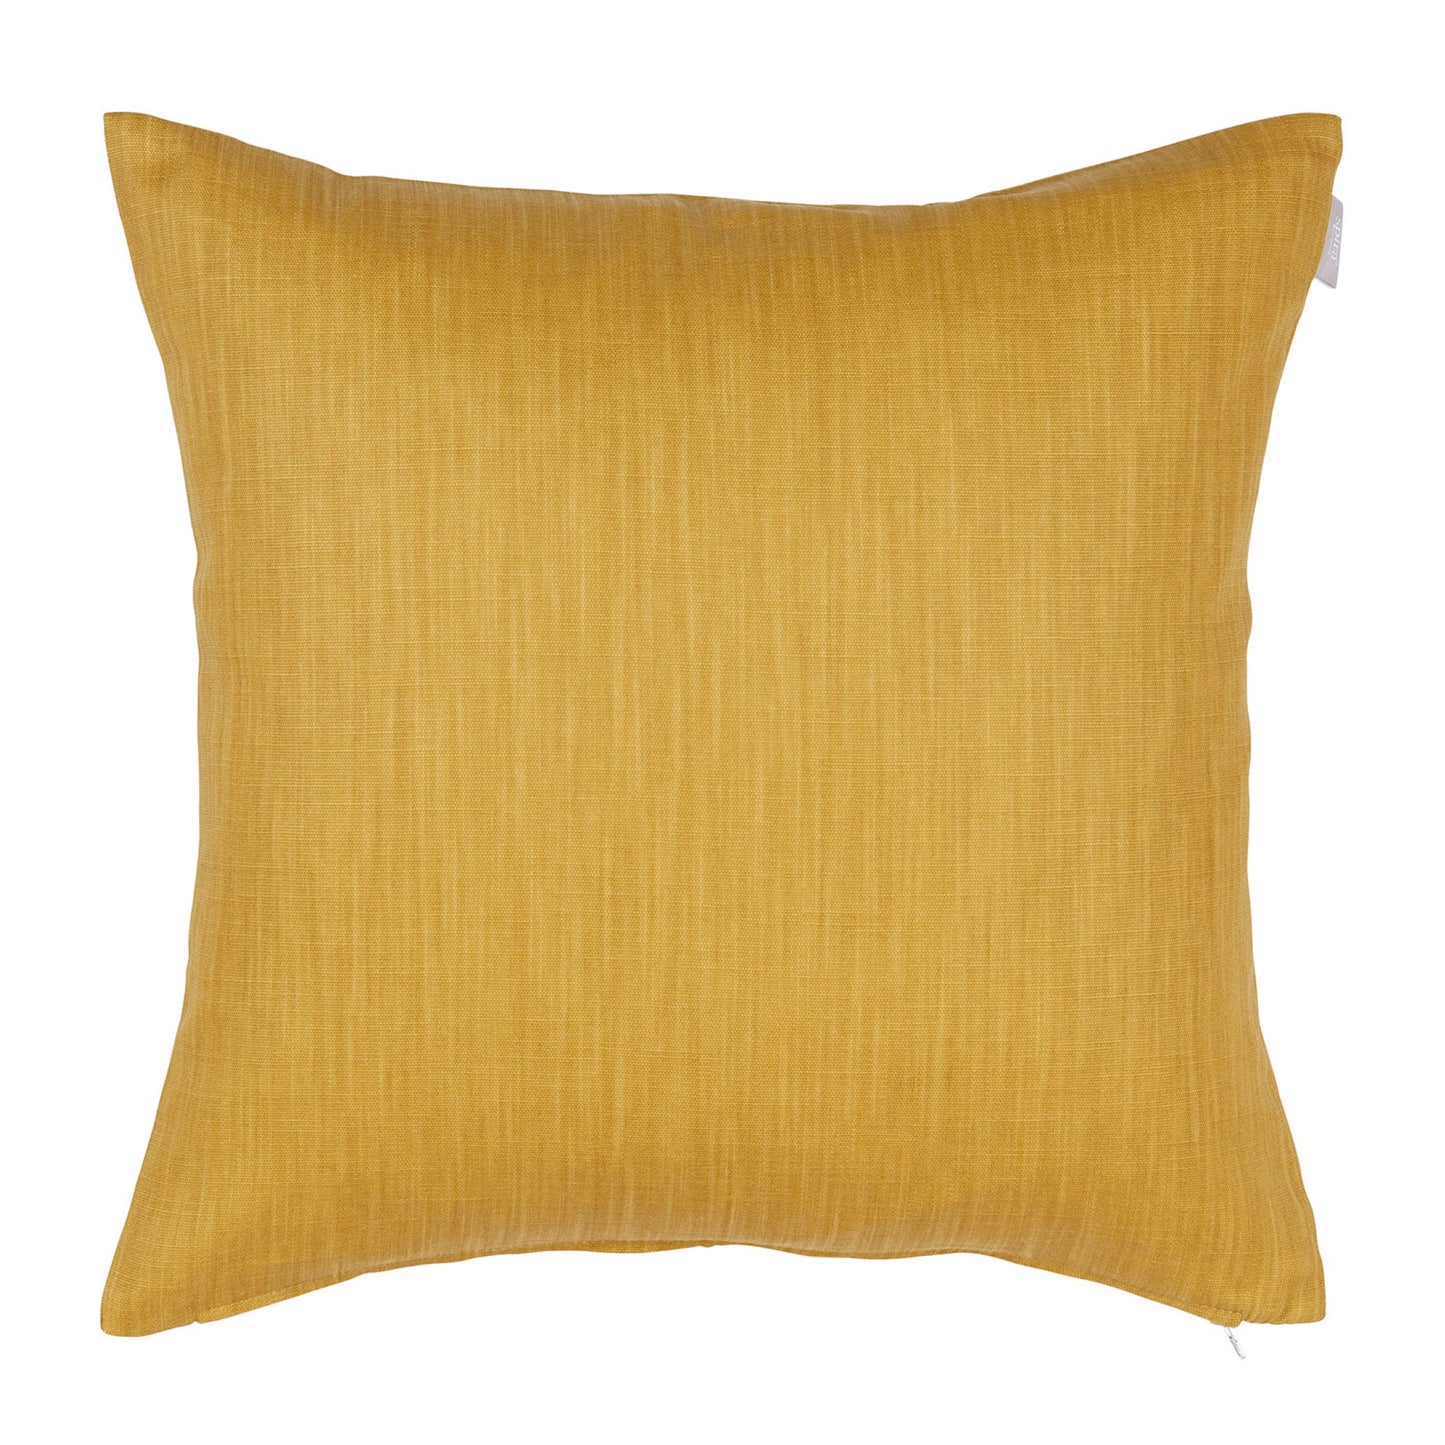 Slat Cushion Cover - Mustard